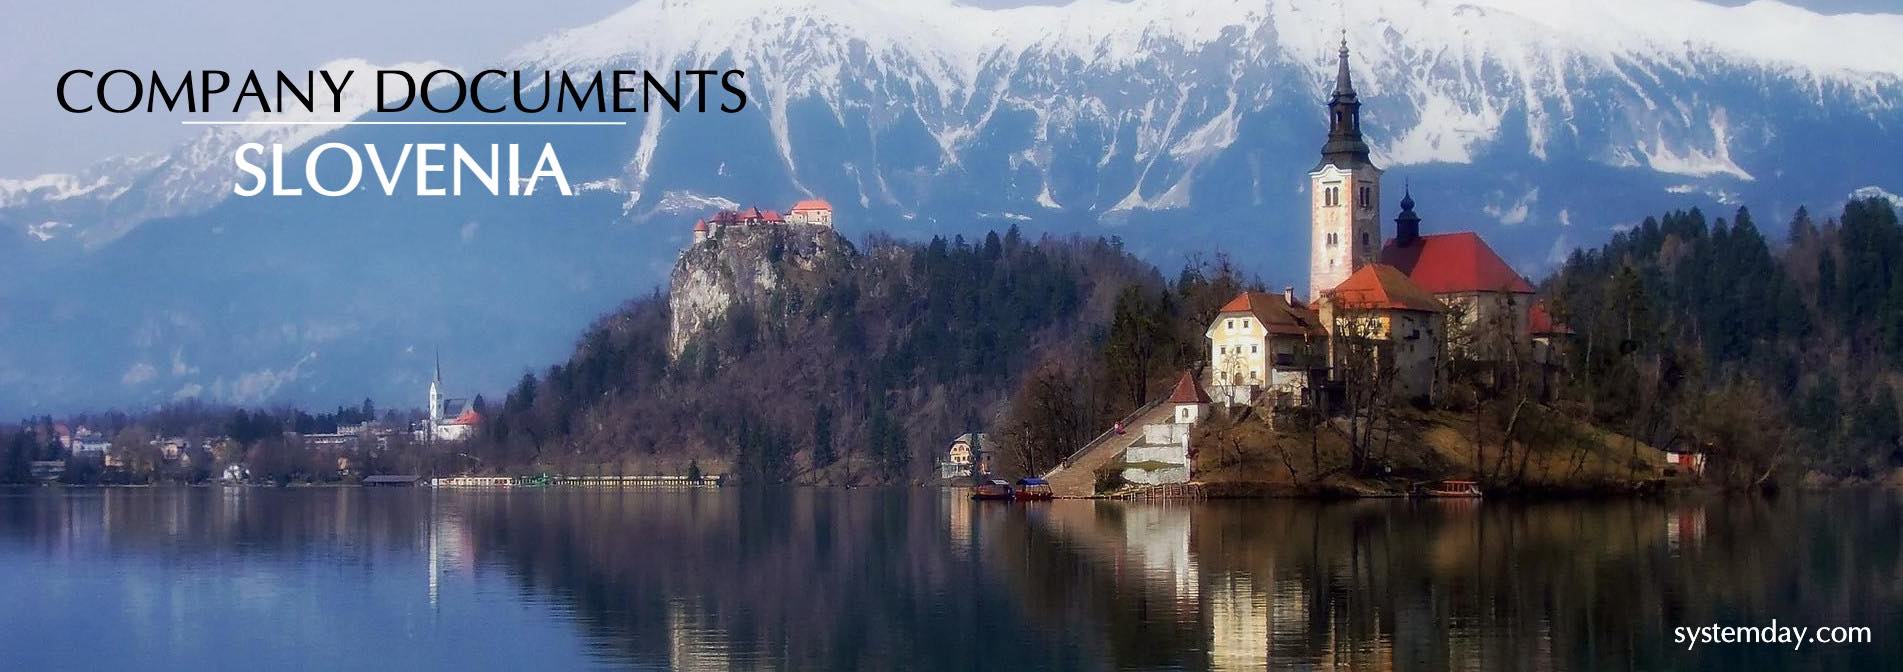 Slovenia Company Documents